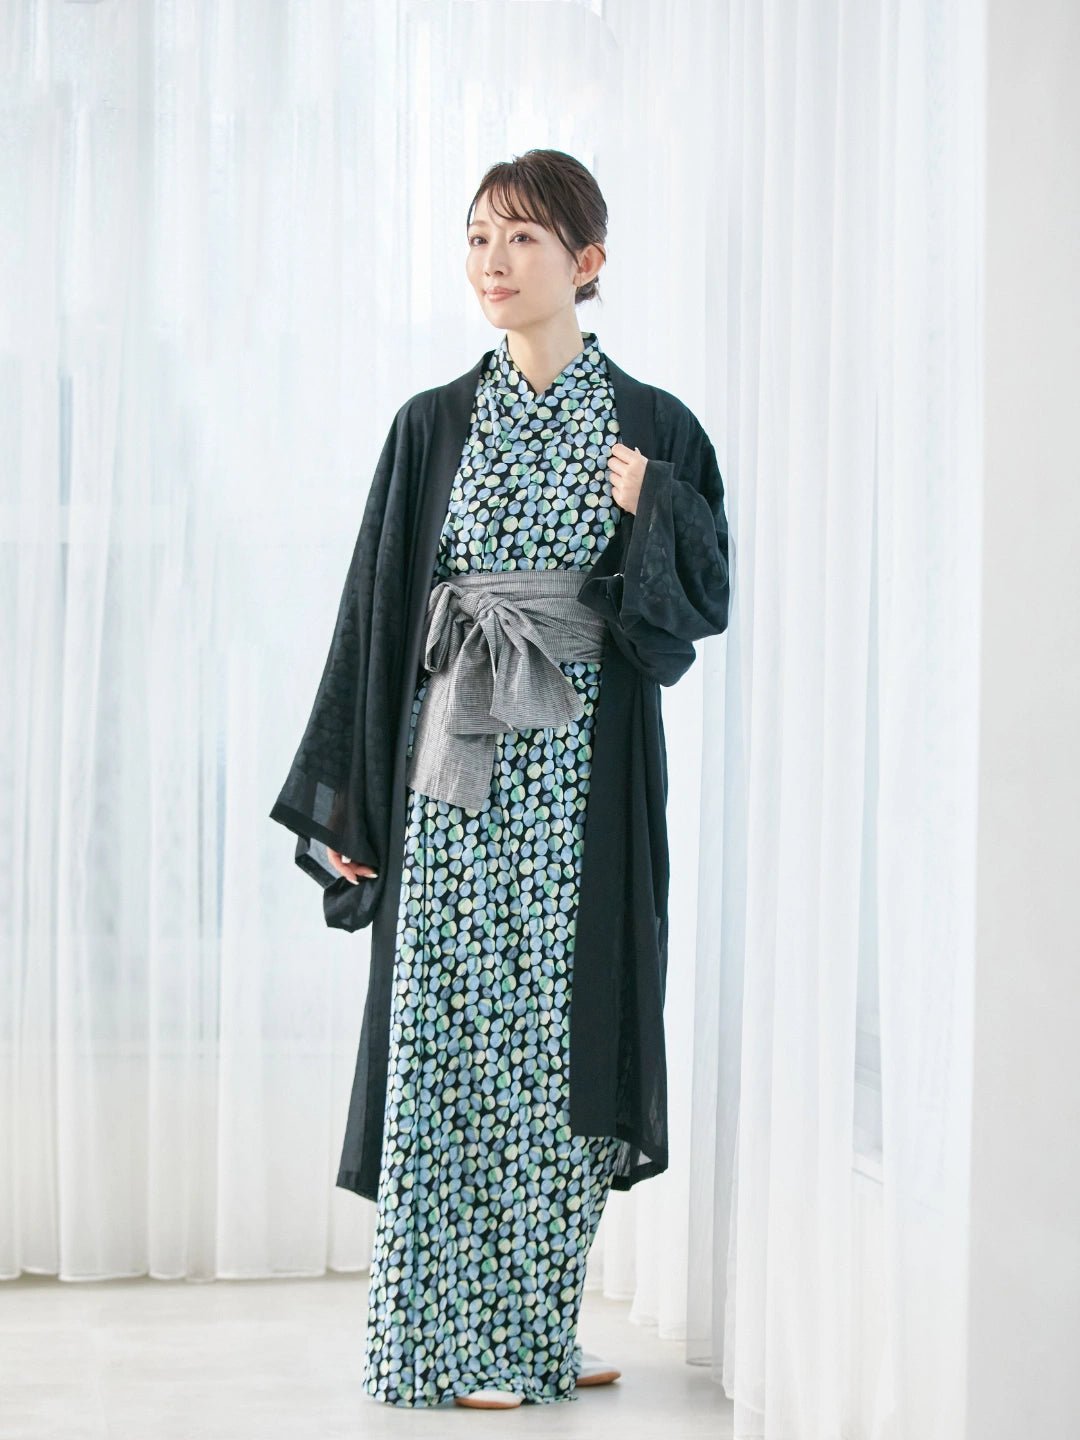 浴衣ルームウェアNanafu | Yukata Loungewear | Kimono robe – Nanafu 